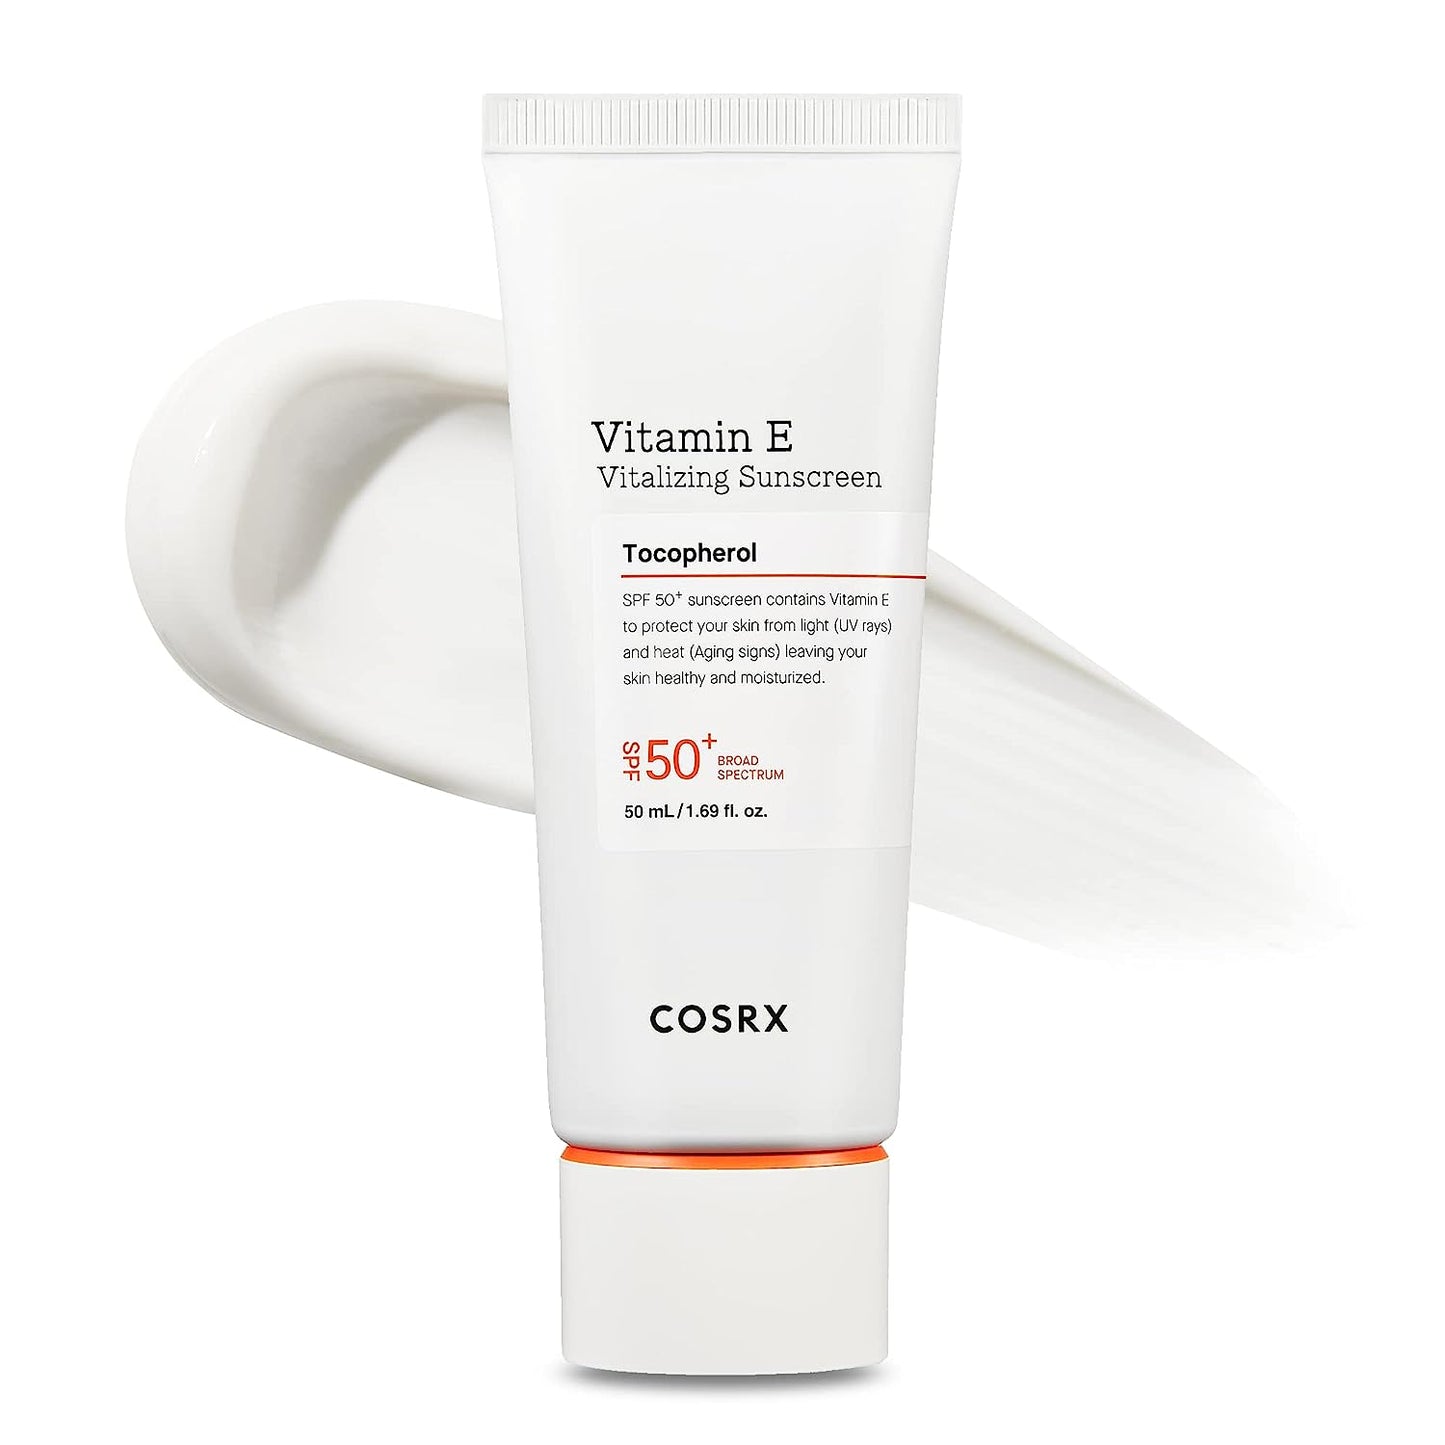 COSRX Daily SPF 50 Vitamin E Vitalizing Sunscreen 50ml